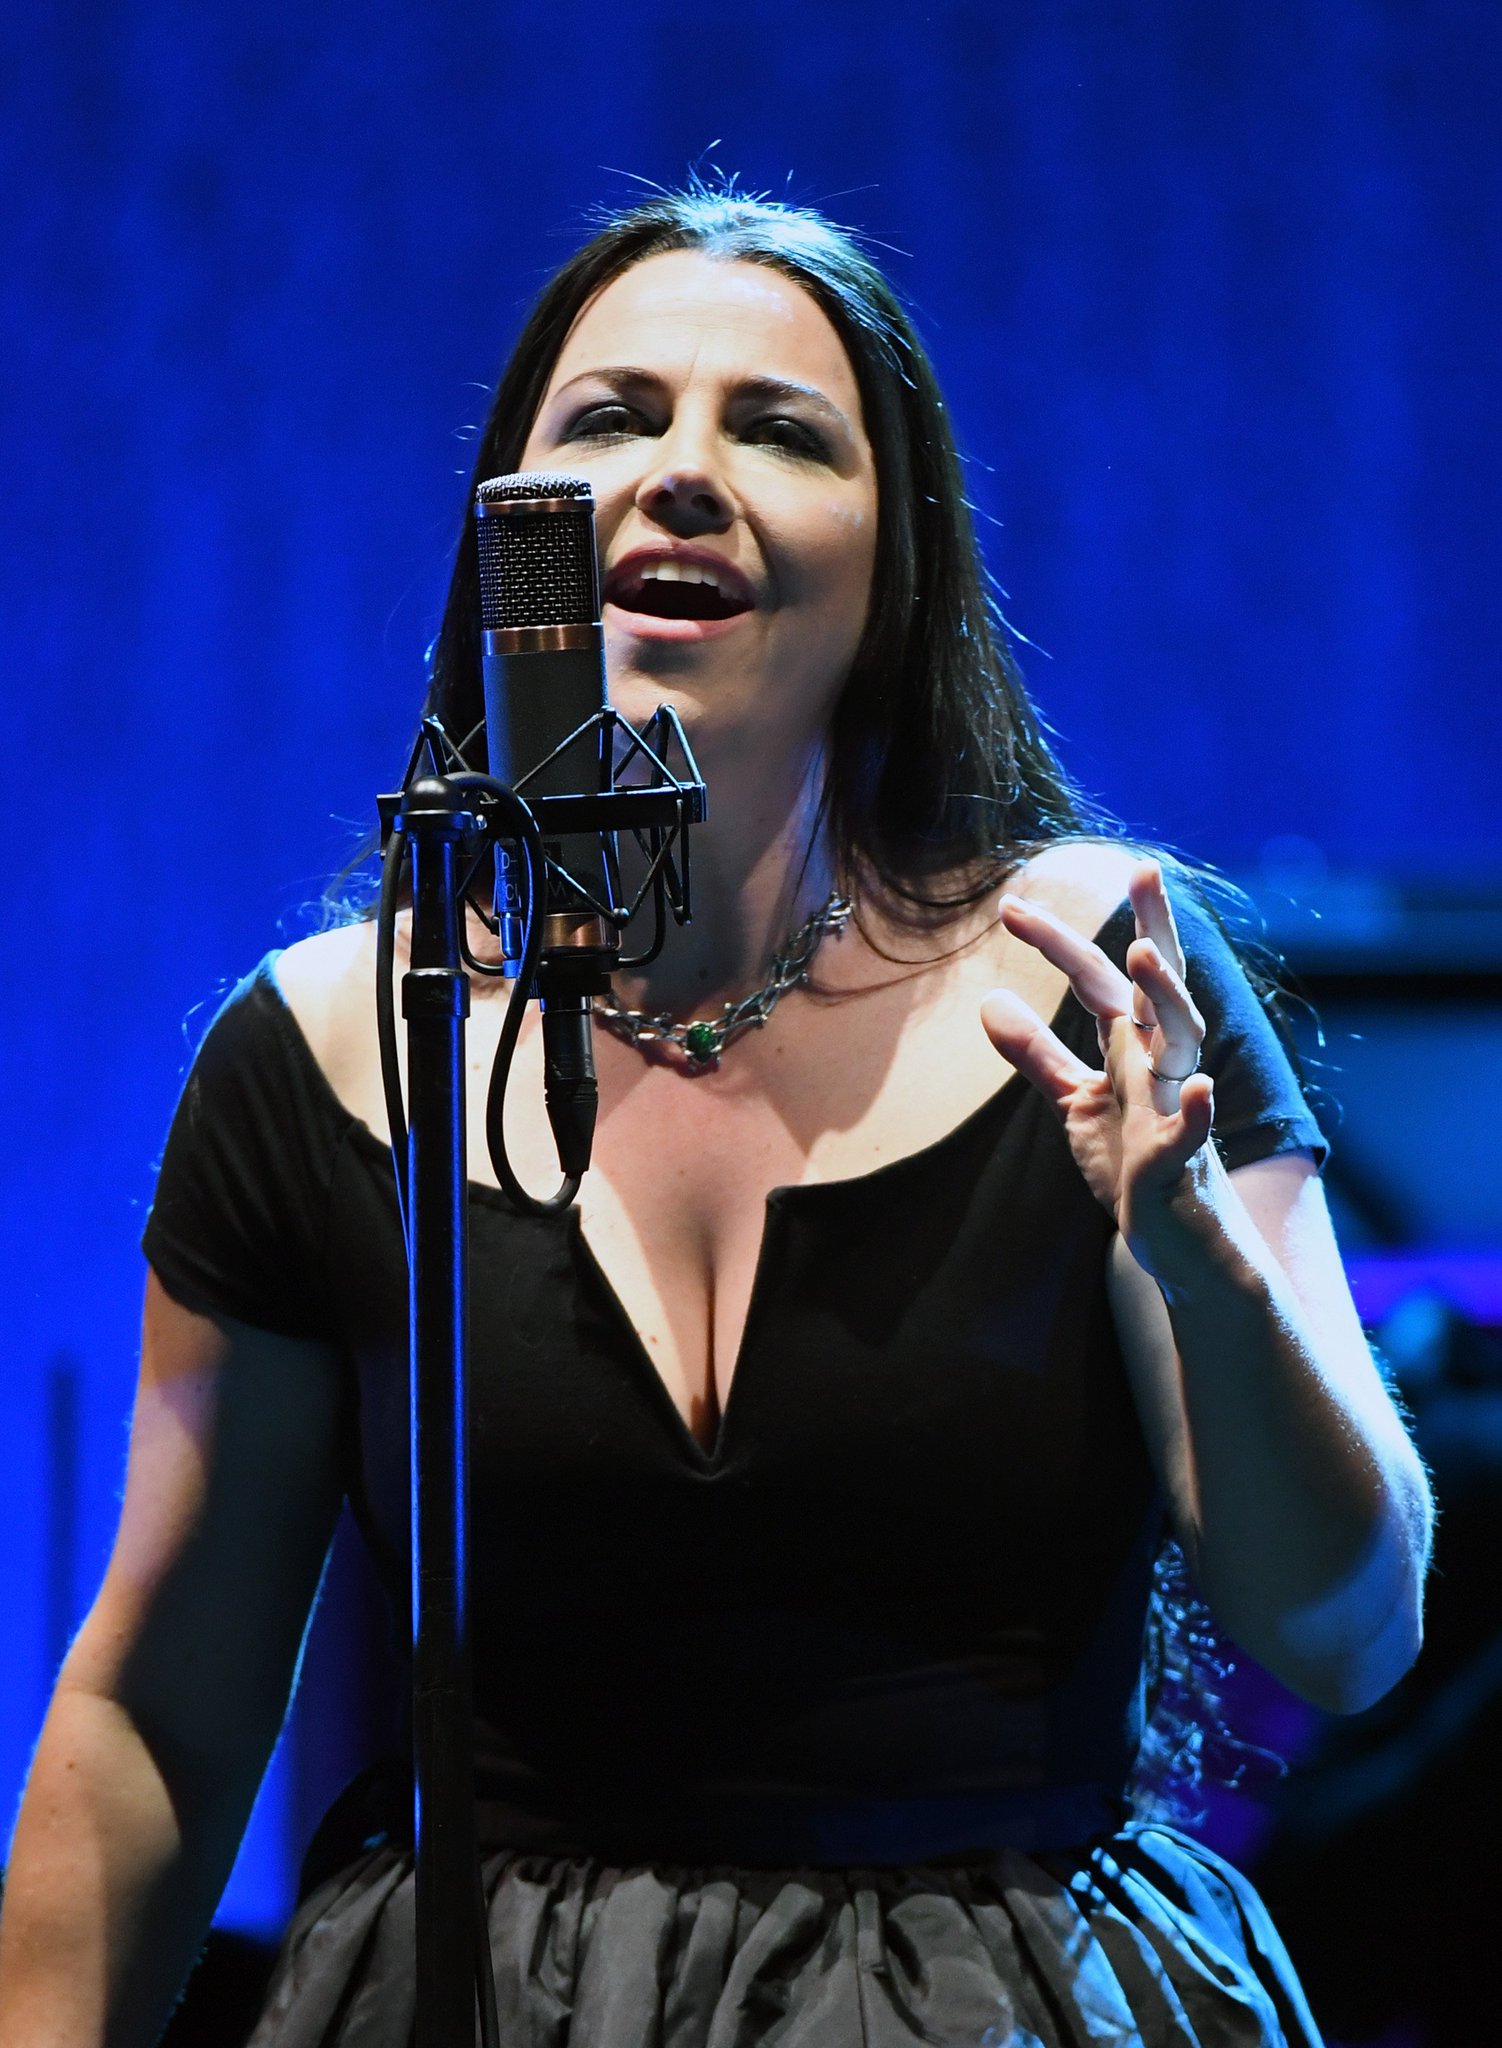 37 anos para Amy Lee!!!

A mezzo-soprano do Evanescence

Happy Birthday 